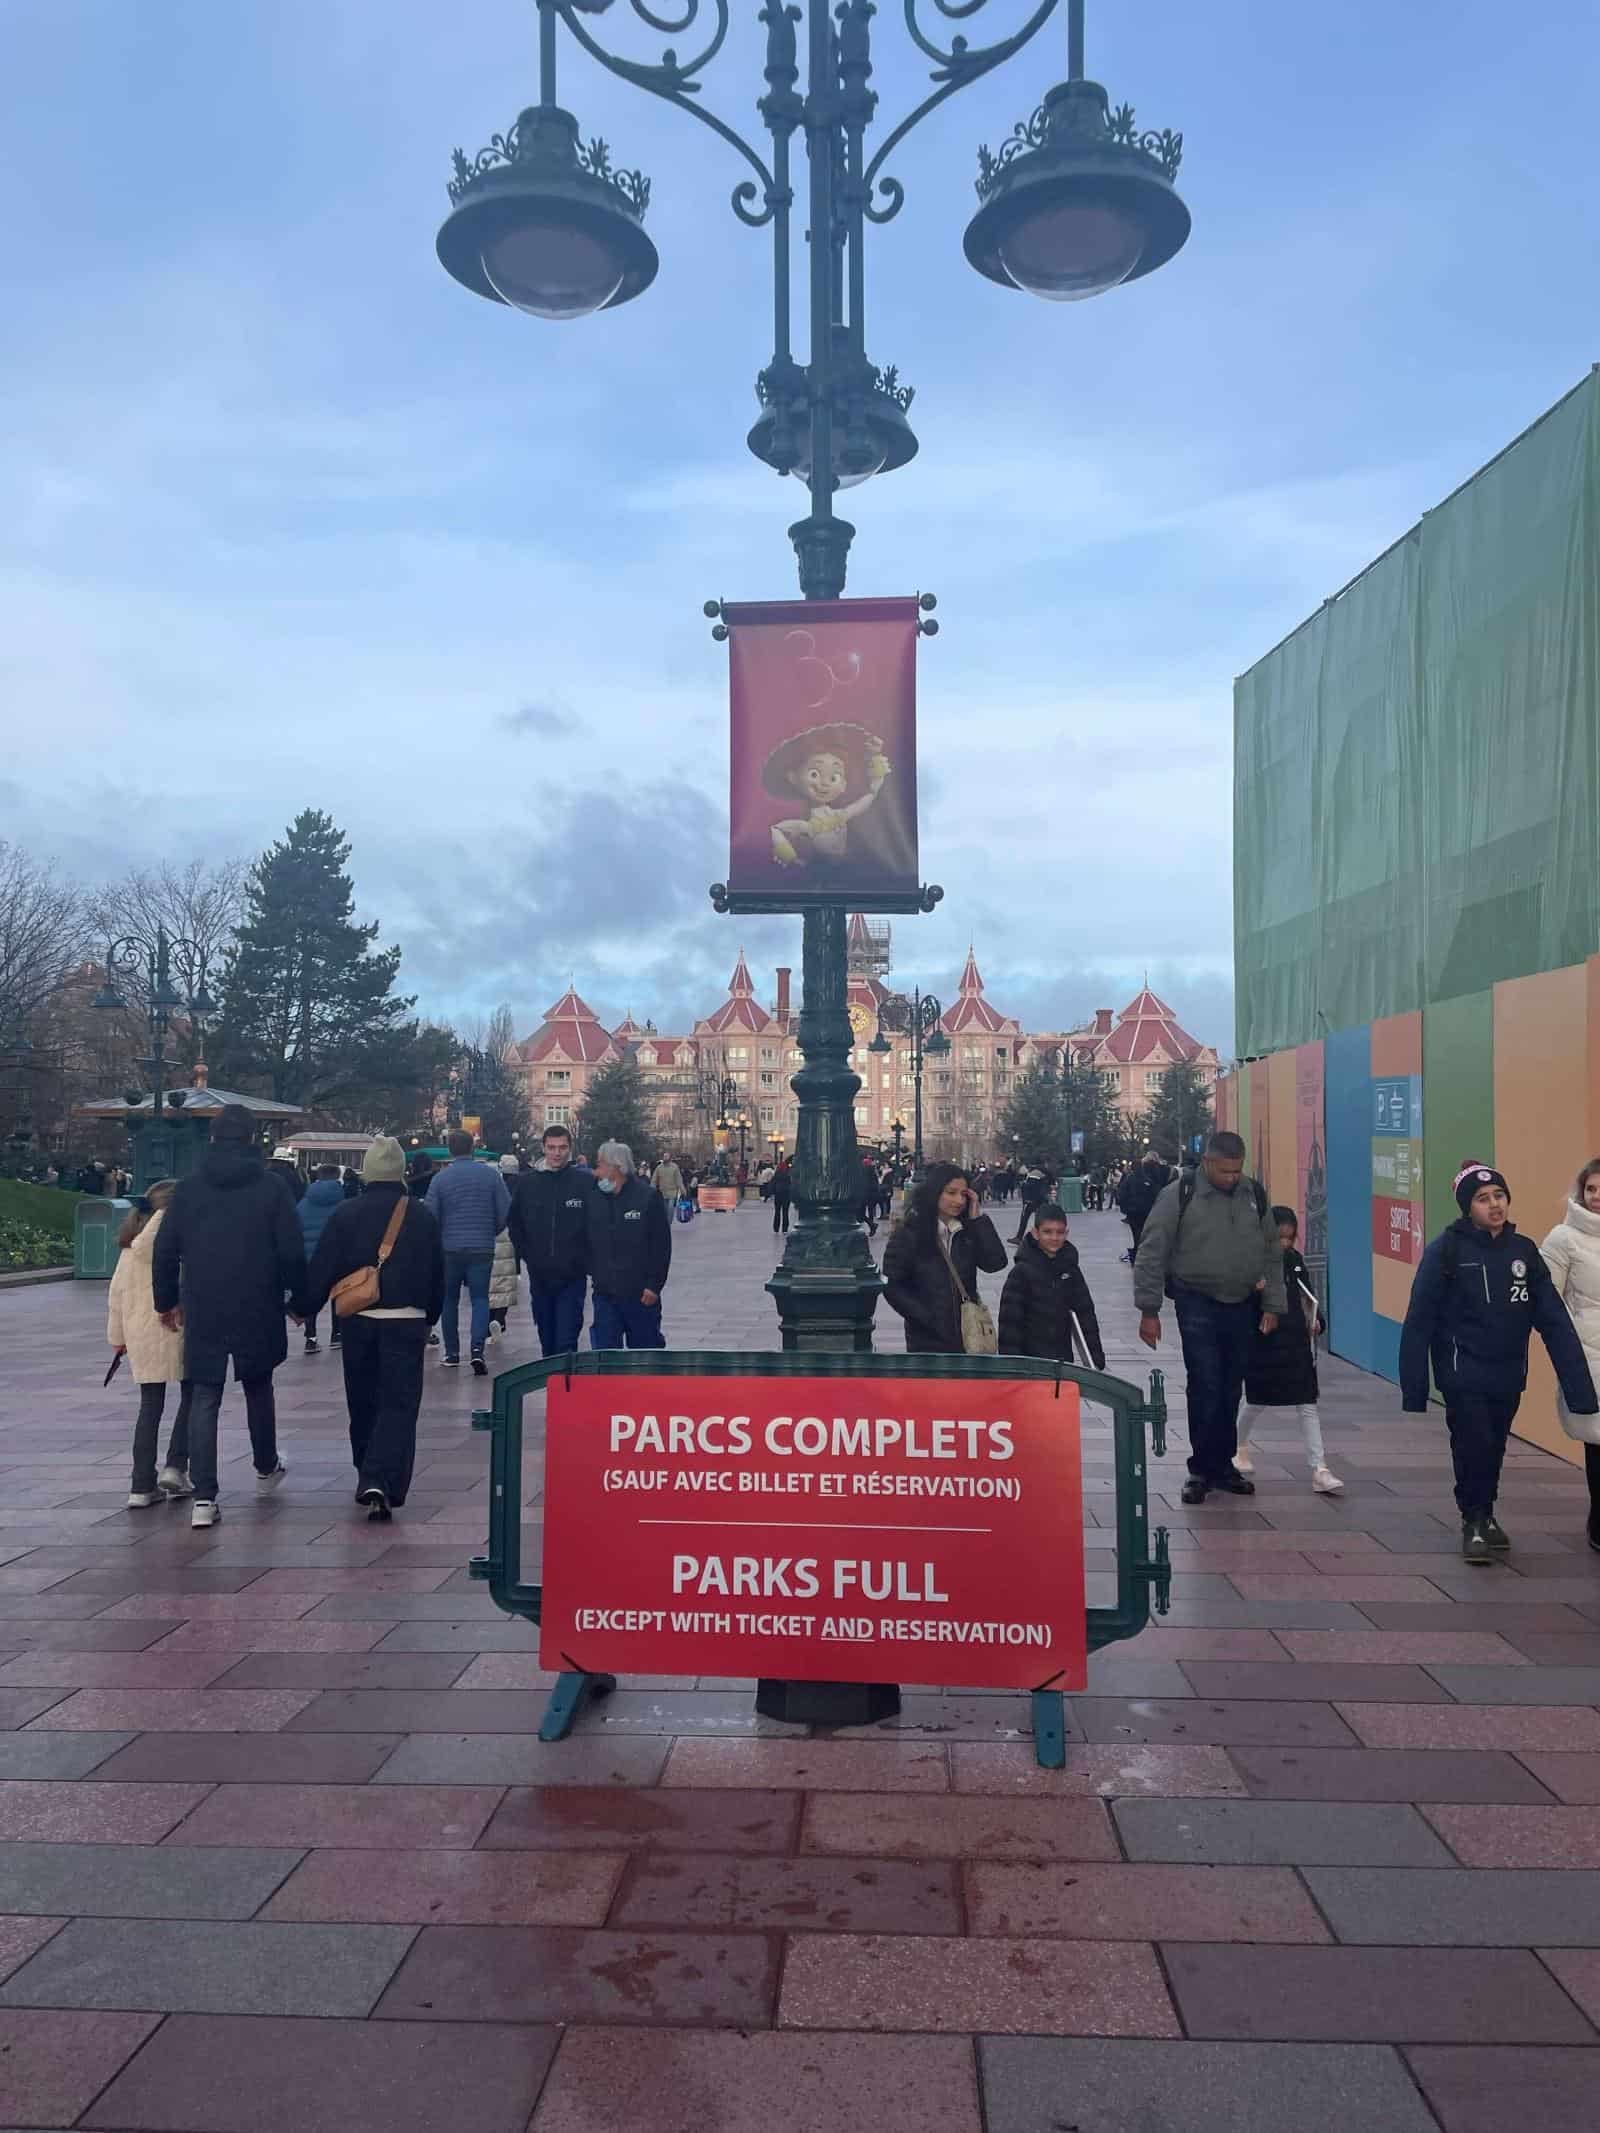 Disneyland Paris park full sign